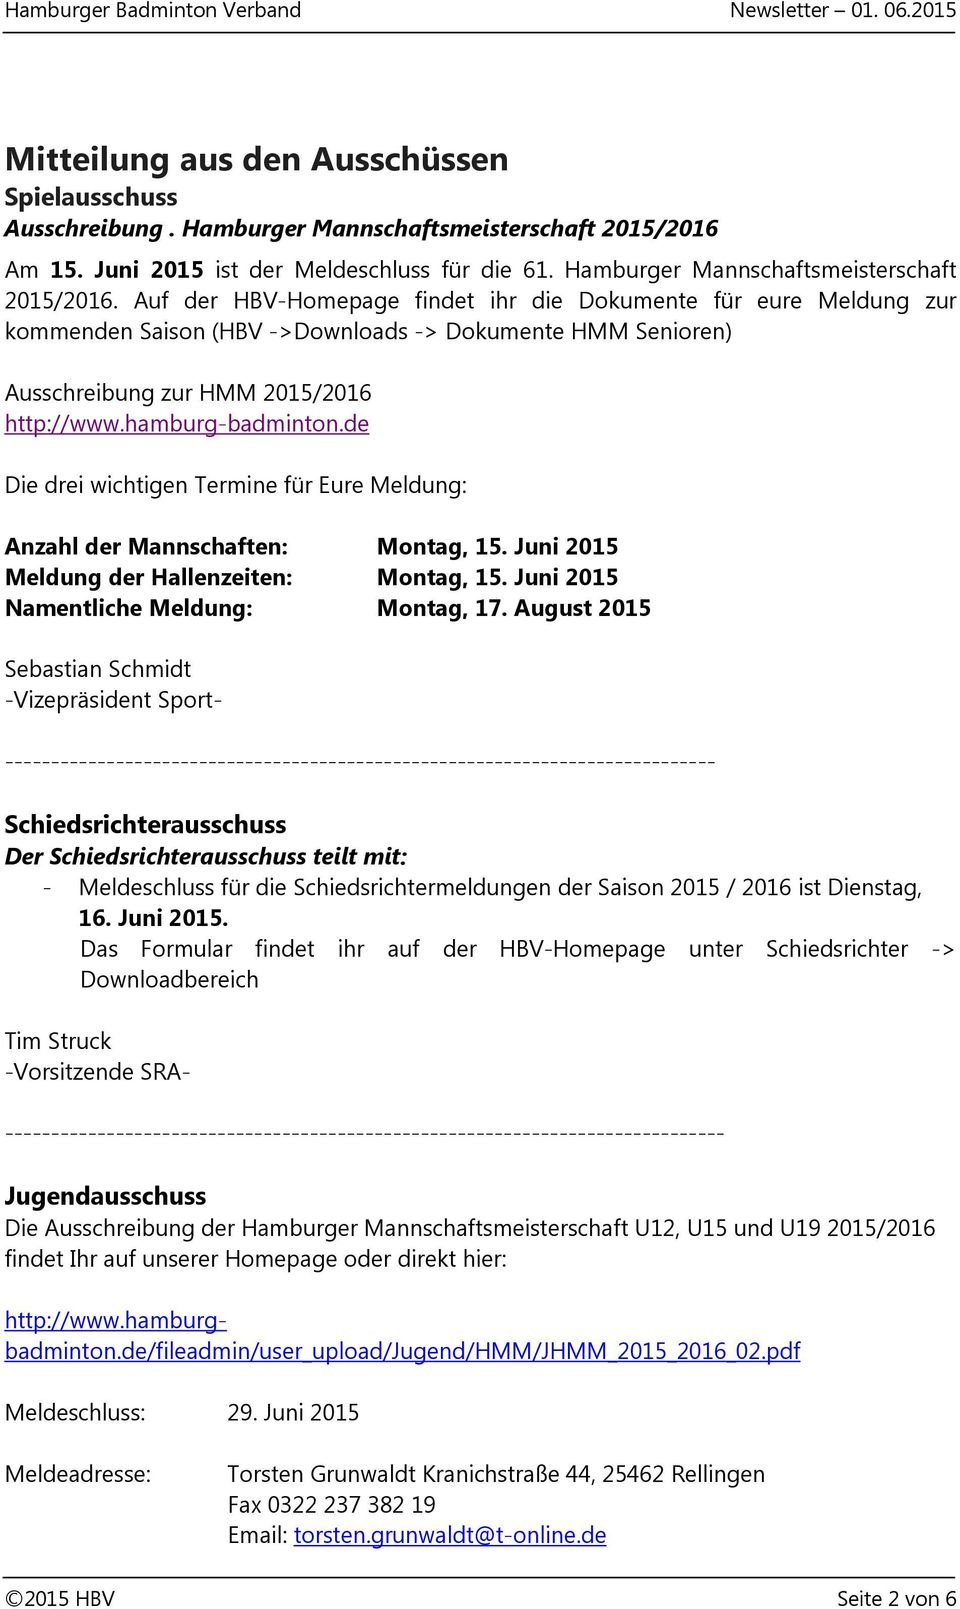 Auf der HBV-Homepage findet ihr die Dokumente für eure Meldung zur kommenden Saison (HBV ->Downloads -> Dokumente HMM Senioren) Ausschreibung zur HMM 2015/2016 http://www.hamburg-badminton.